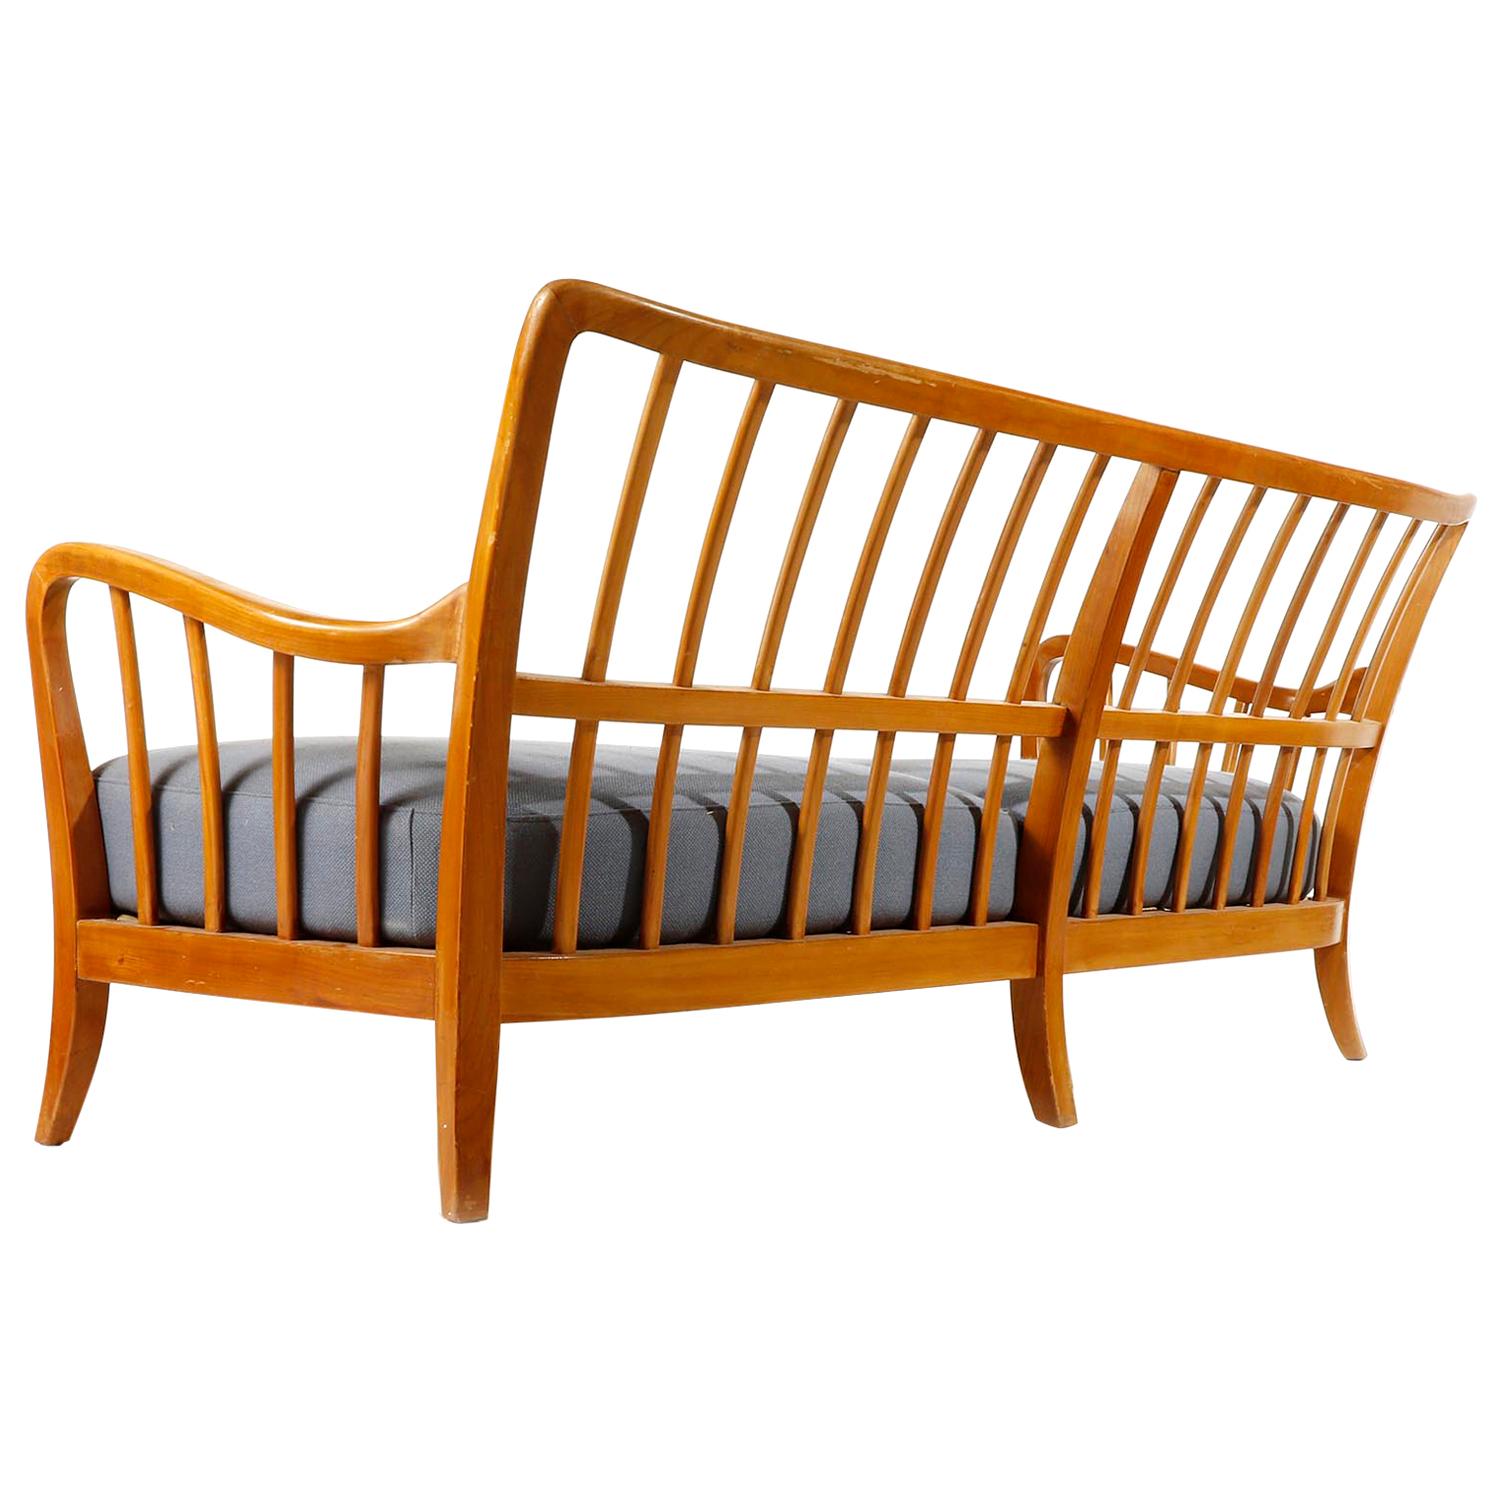 Ein freistehender 3-Sitzer, hergestellt von Thonet, Österreich, in den späten 1930er oder frühen 1940er Jahren.
Das Design wird Josef Frank zugeschrieben.
Dieser bequeme und handgefertigte Sessel ist aus warm getöntem Buchenholz mit zwei losen Sitz-